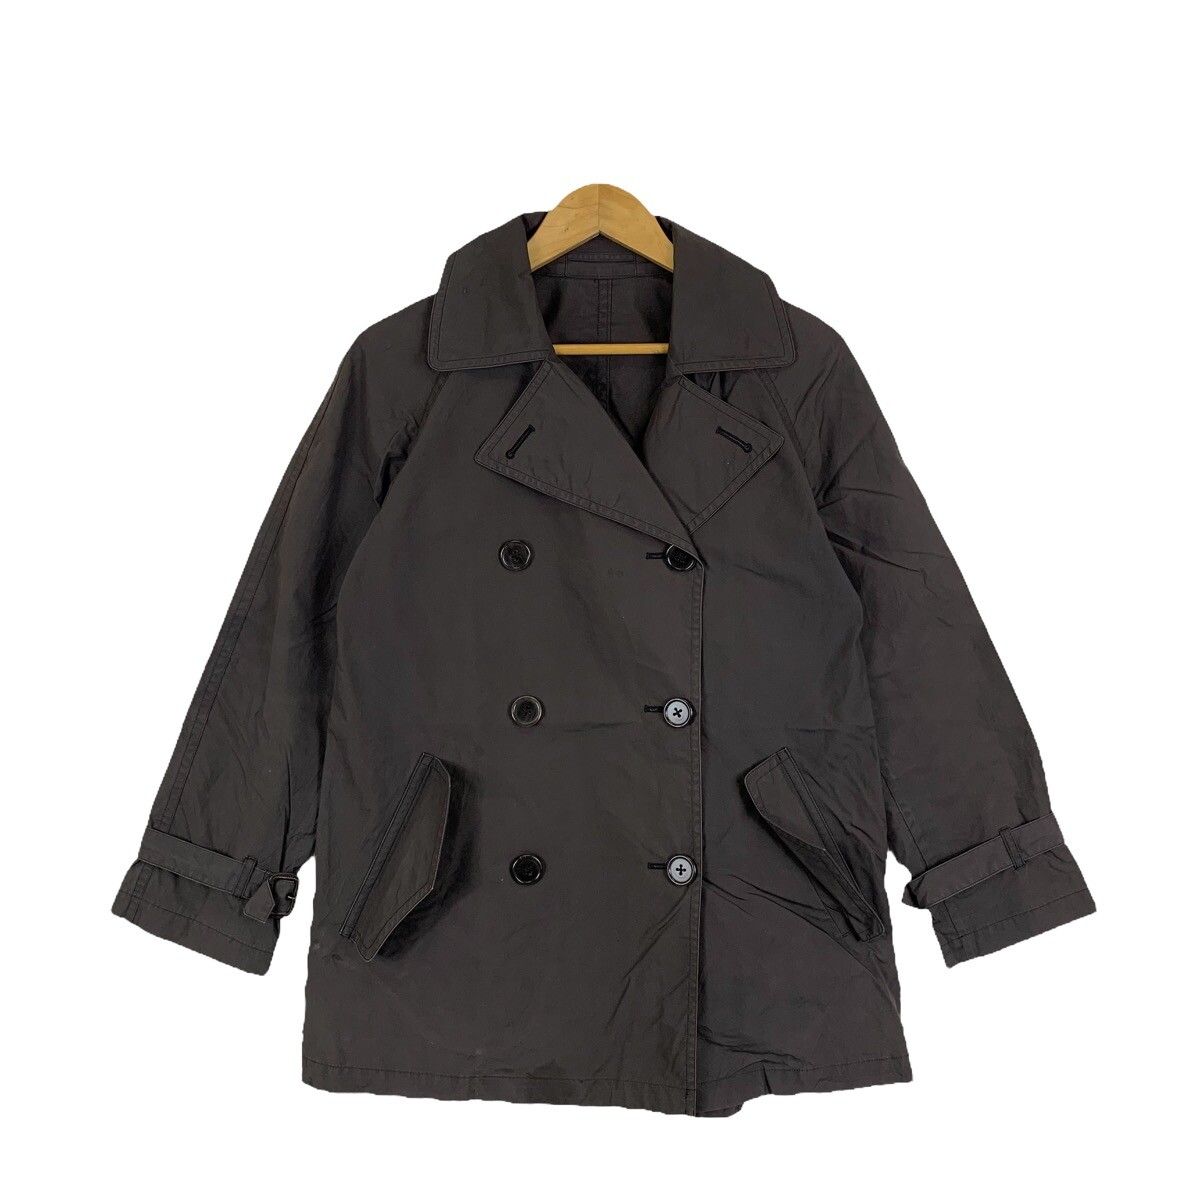 Vintage MARGARET HOWELL British Fashion Designer Trench Coats Jacket ...